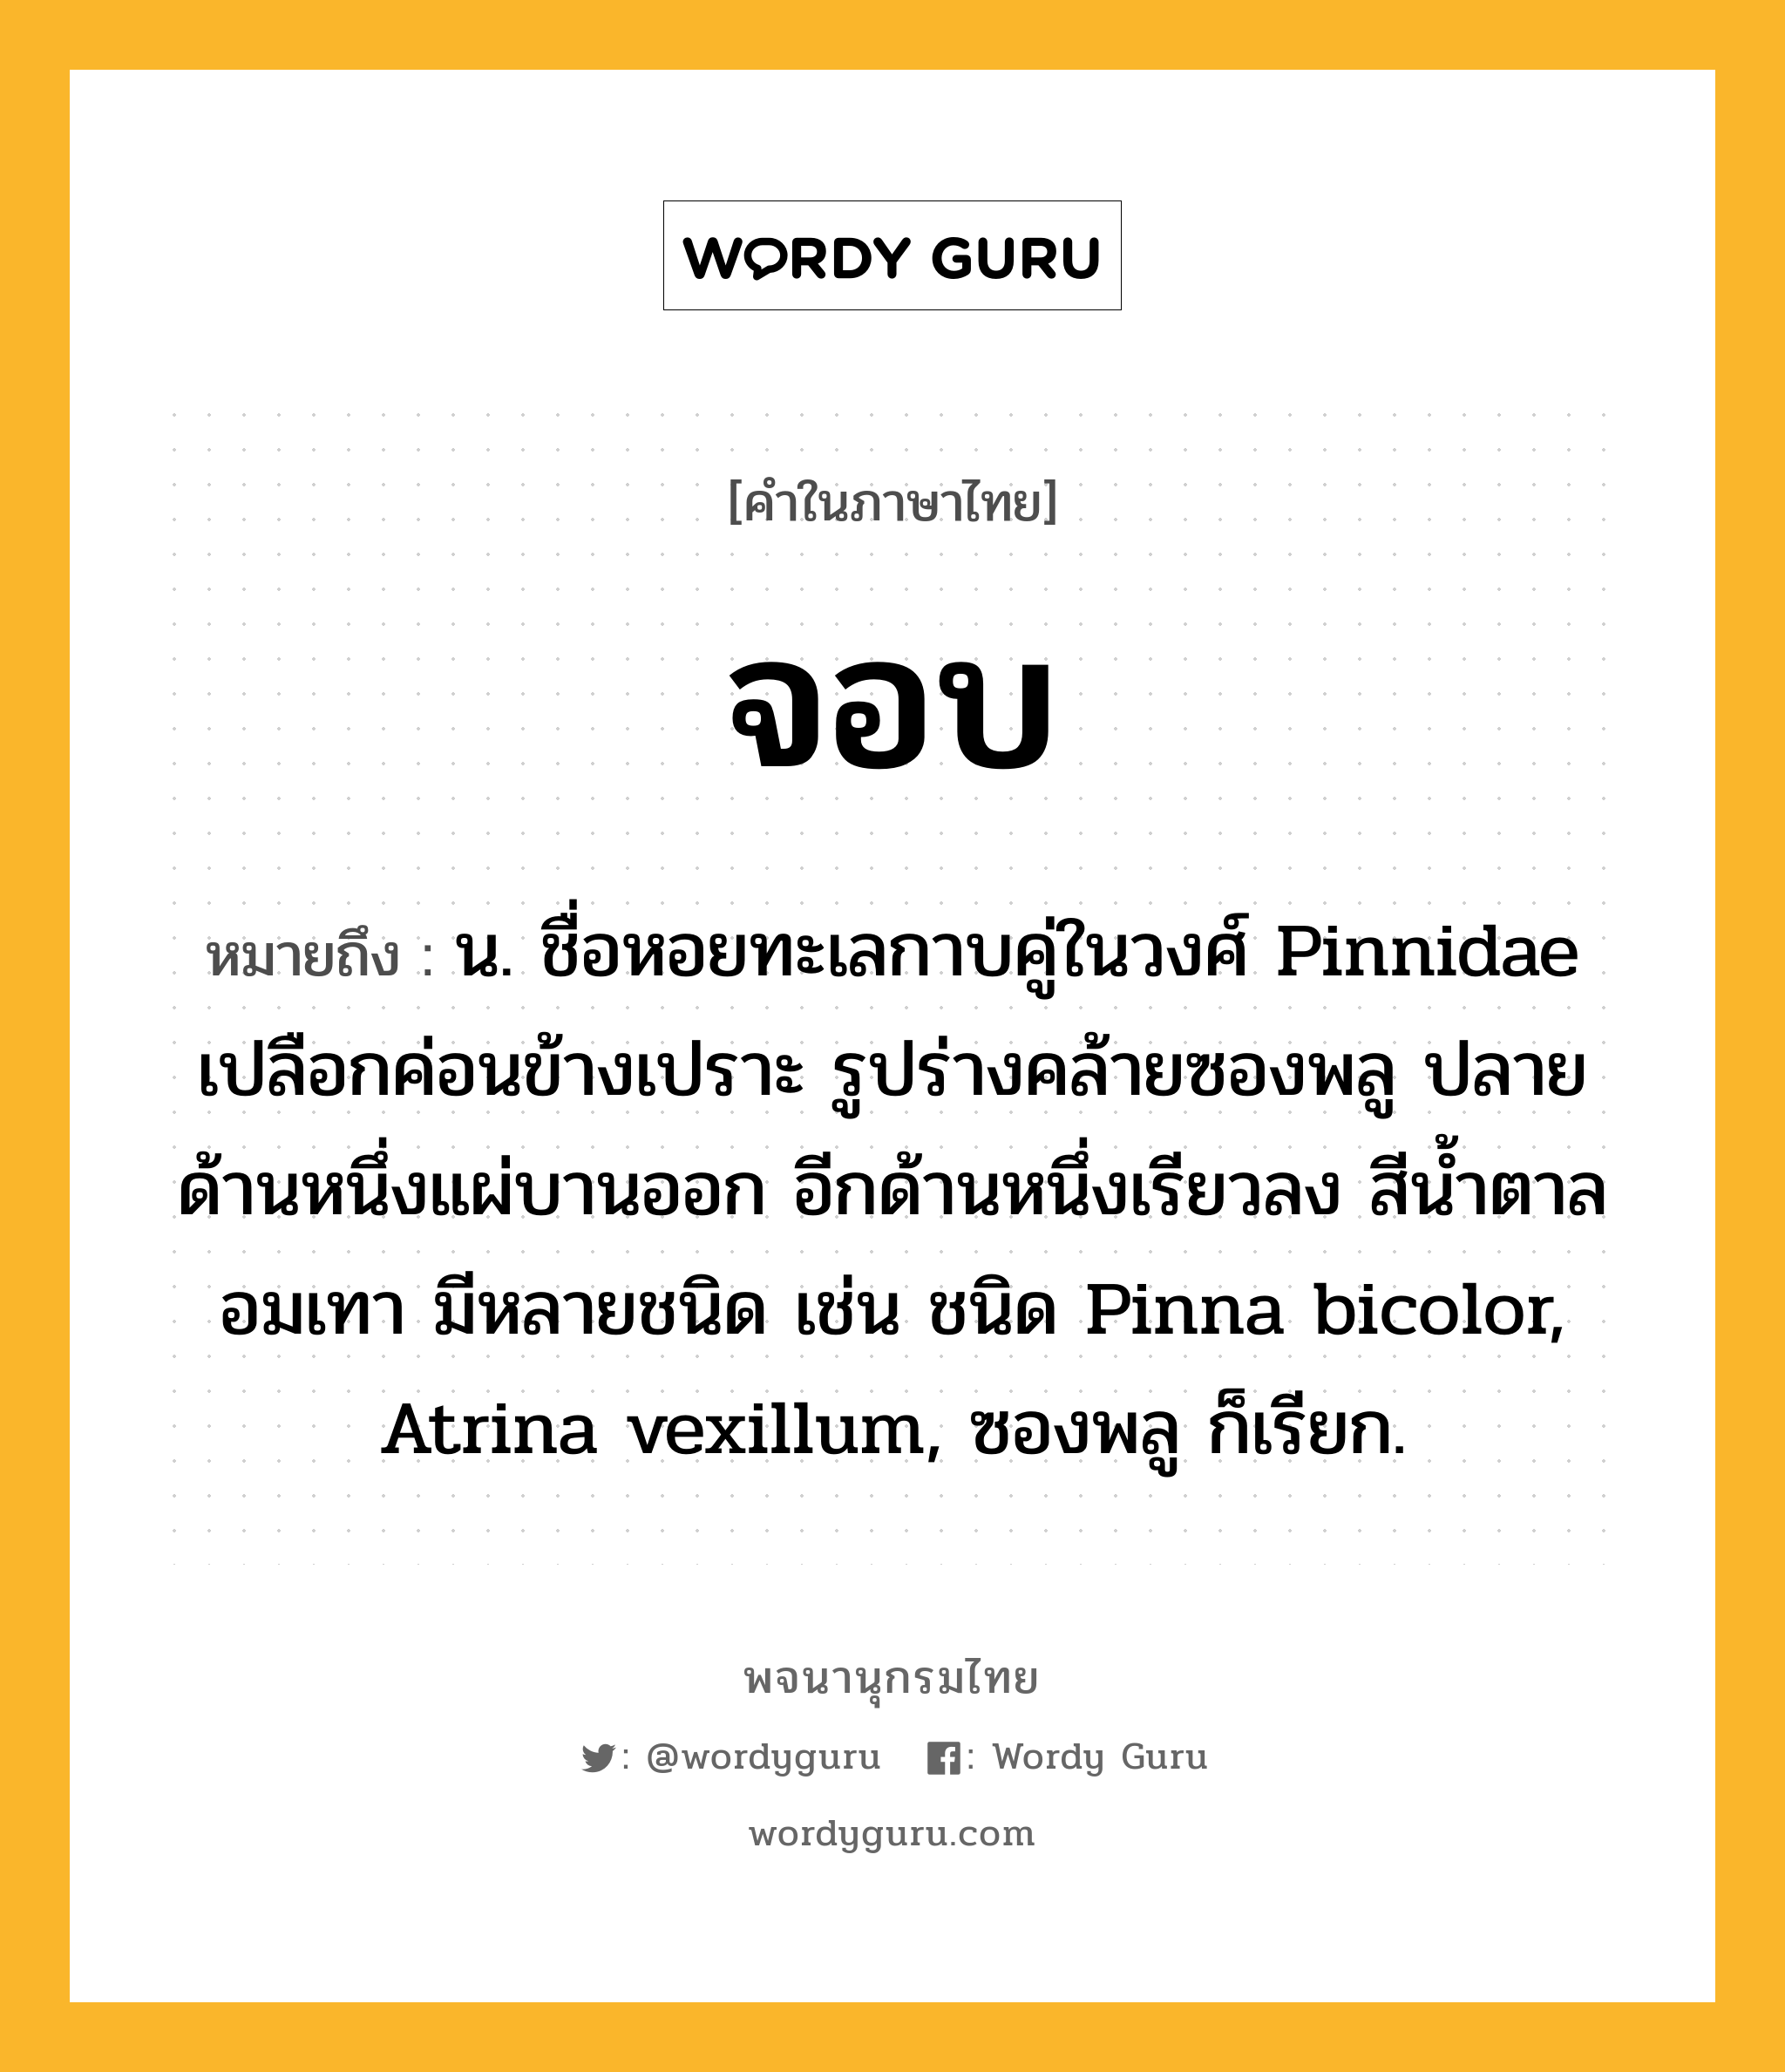 จอบ หมายถึงอะไร?, คำในภาษาไทย จอบ หมายถึง น. ชื่อหอยทะเลกาบคู่ในวงศ์ Pinnidae เปลือกค่อนข้างเปราะ รูปร่างคล้ายซองพลู ปลายด้านหนึ่งแผ่บานออก อีกด้านหนึ่งเรียวลง สีนํ้าตาลอมเทา มีหลายชนิด เช่น ชนิด Pinna bicolor, Atrina vexillum, ซองพลู ก็เรียก.